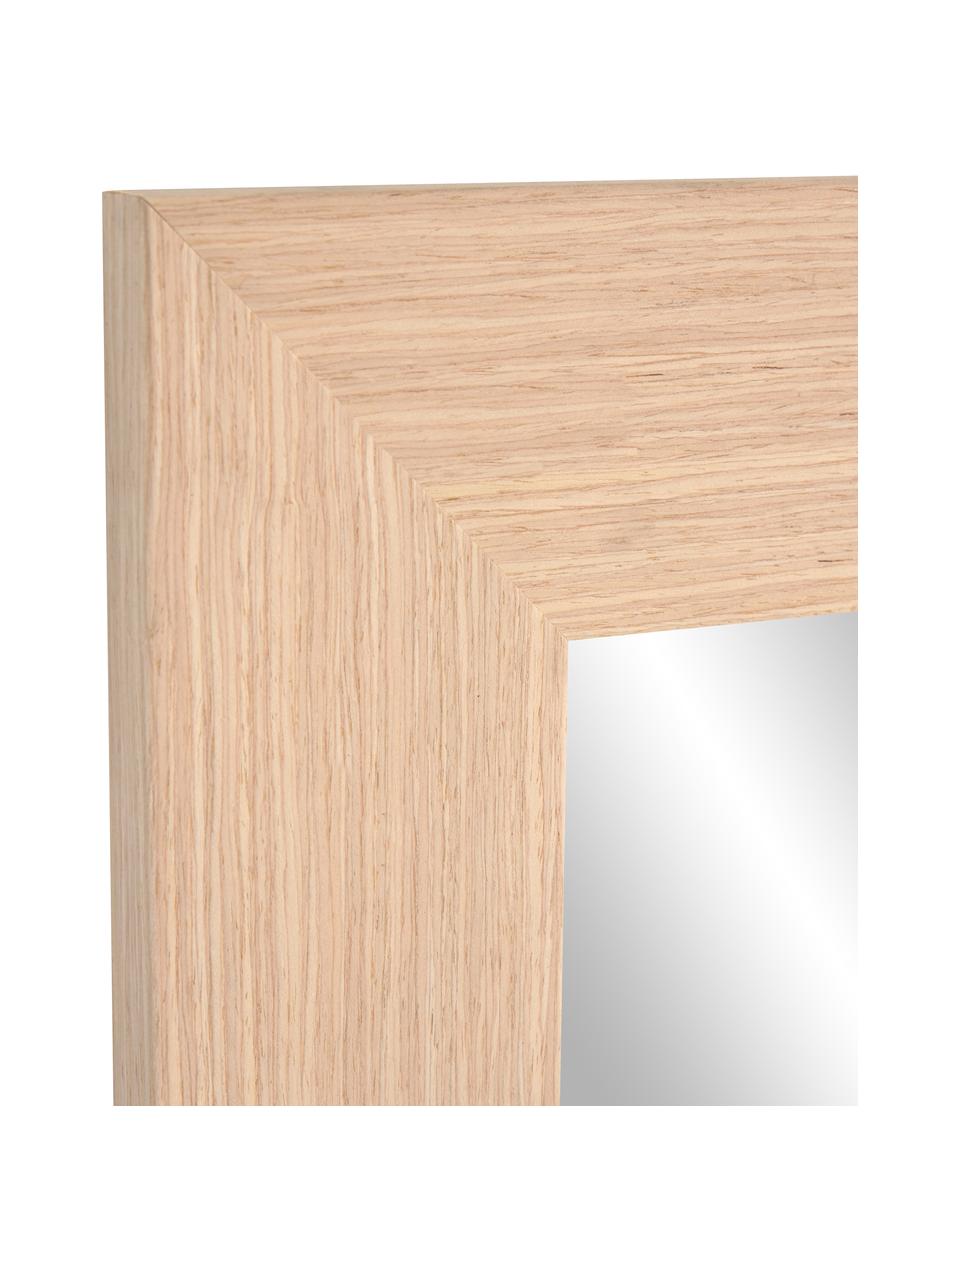 Eckiger Wandspiegel Yvaine mit hellbraunem Holzrahmen, Rahmen: Holz, Spiegelfläche: Spiegelglas, Beige, B 81 x H 181 cm